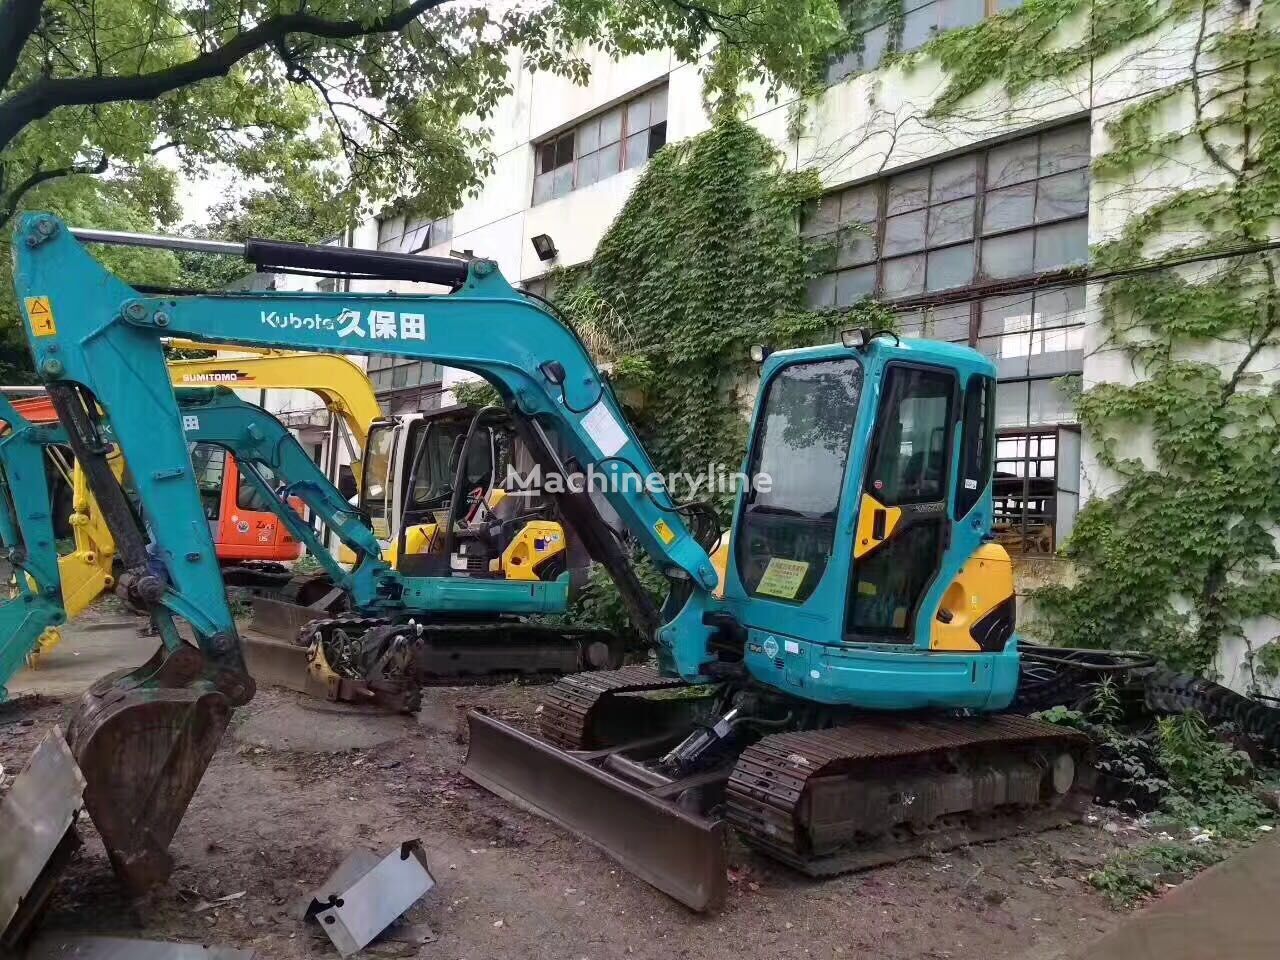 Kubota KX155-3 Kubota excavator 5.5ton Japanese Mini excavator  tracked excavator